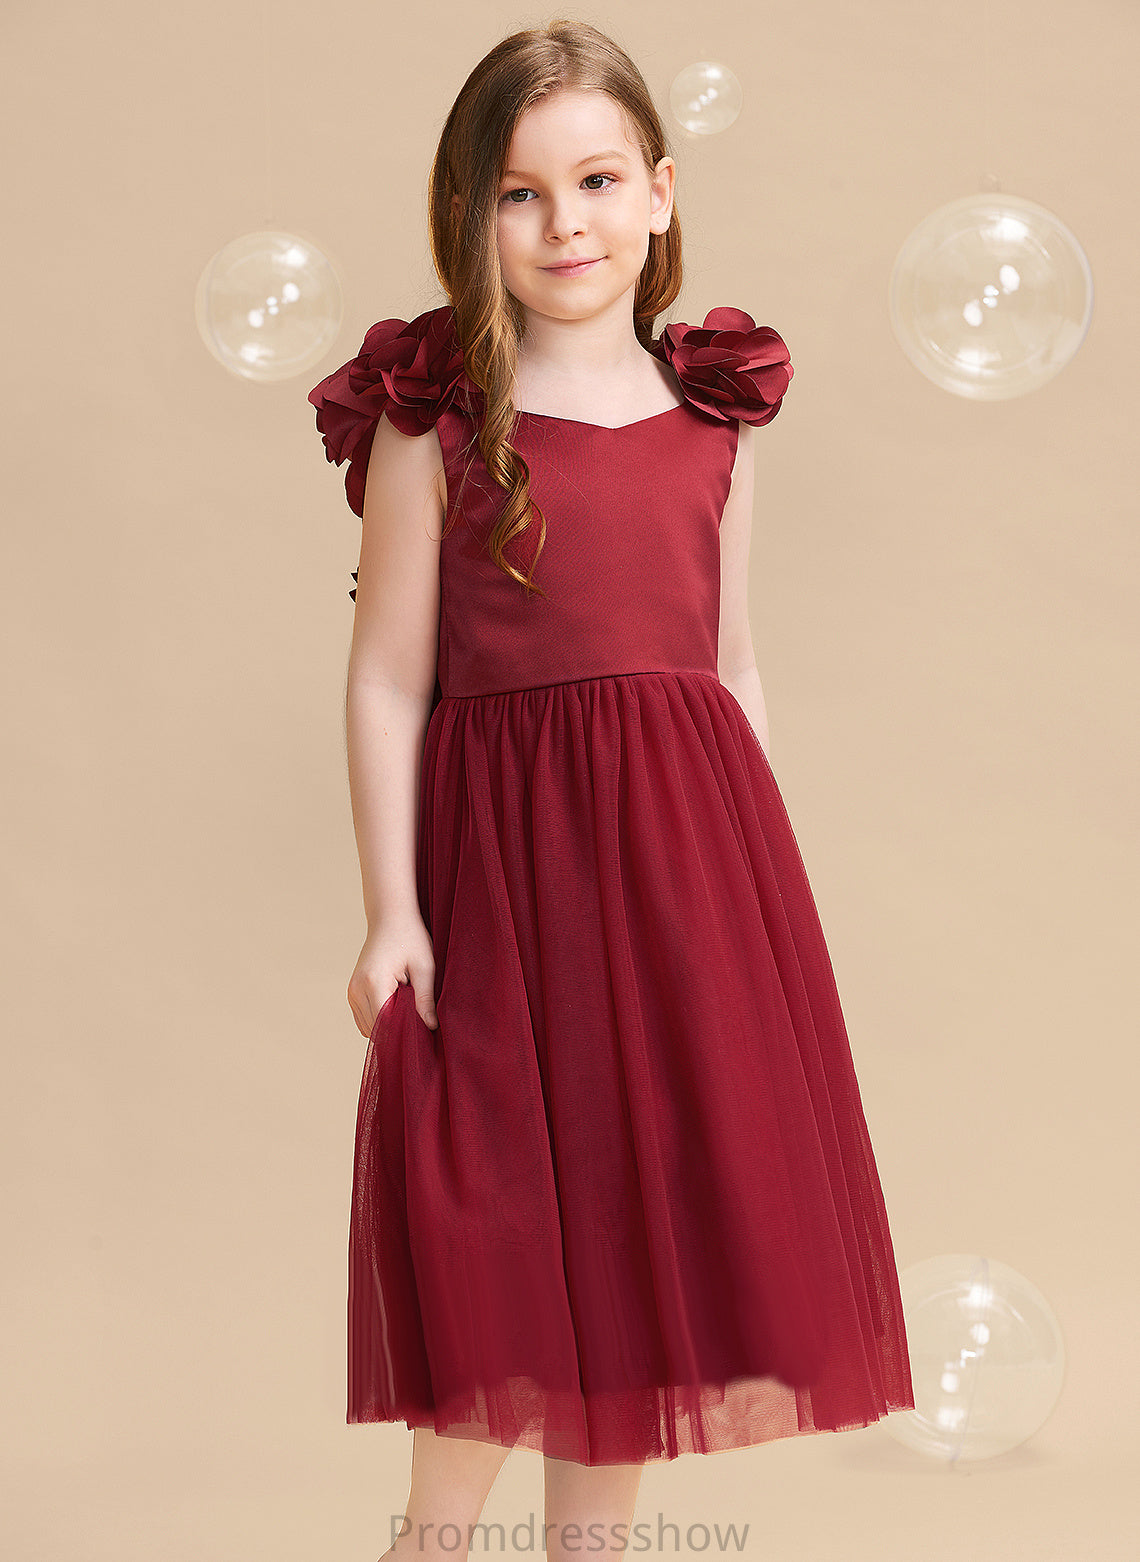 A-Line Tea-length Dress Flower V-neck With Flower(s)/Bow(s) Girl Jennifer Sleeveless - Satin/Tulle Flower Girl Dresses